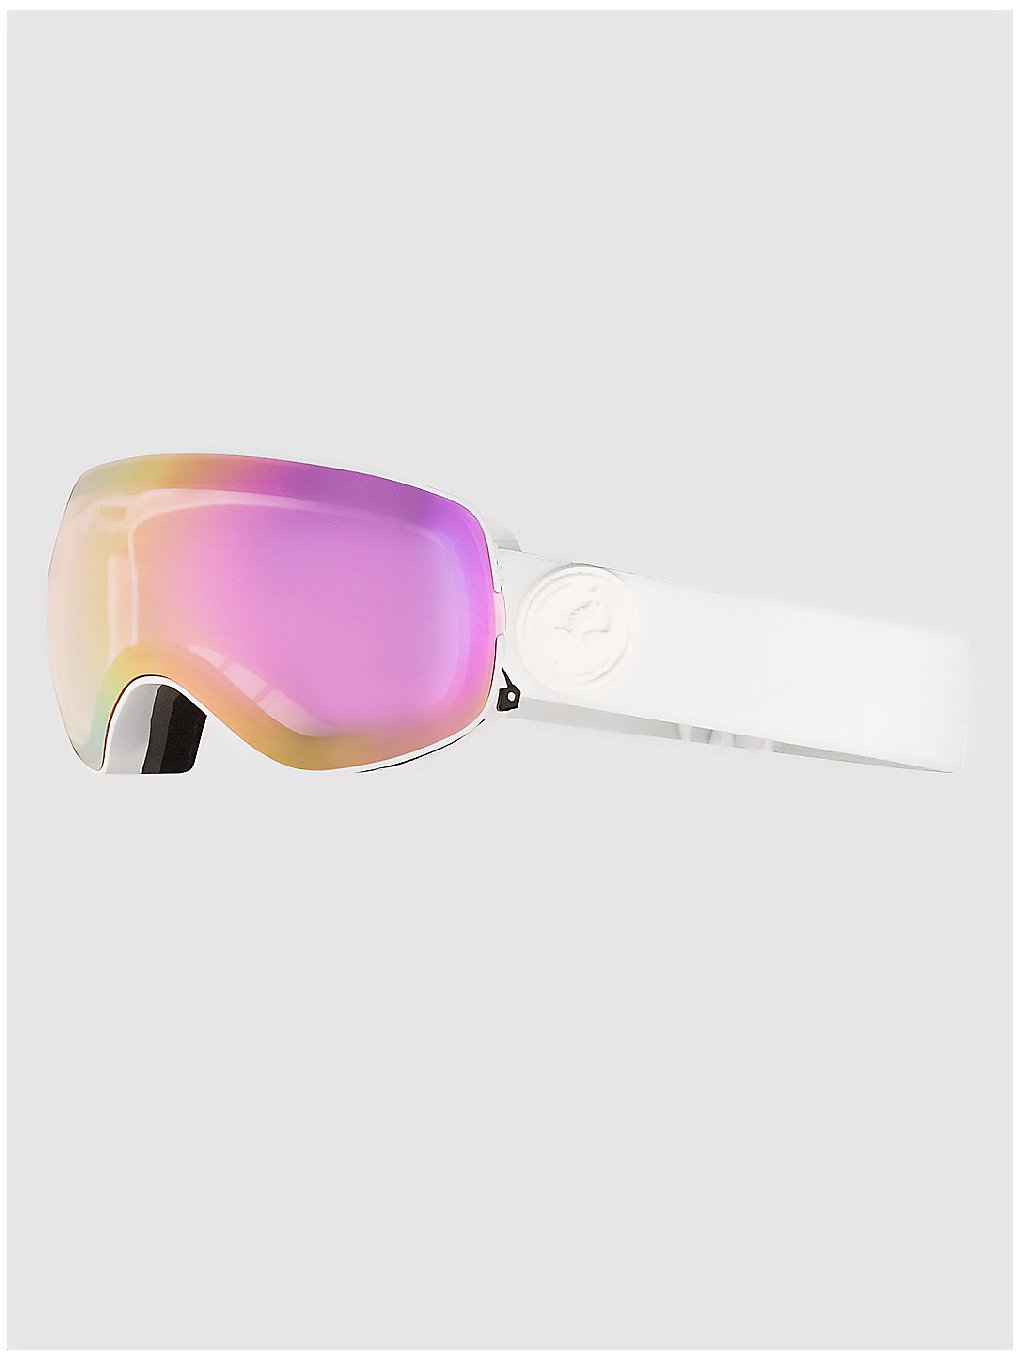 Dragon X2S Whiteout (+Bonus Lens) Goggle pink ion+dark smoke kaufen